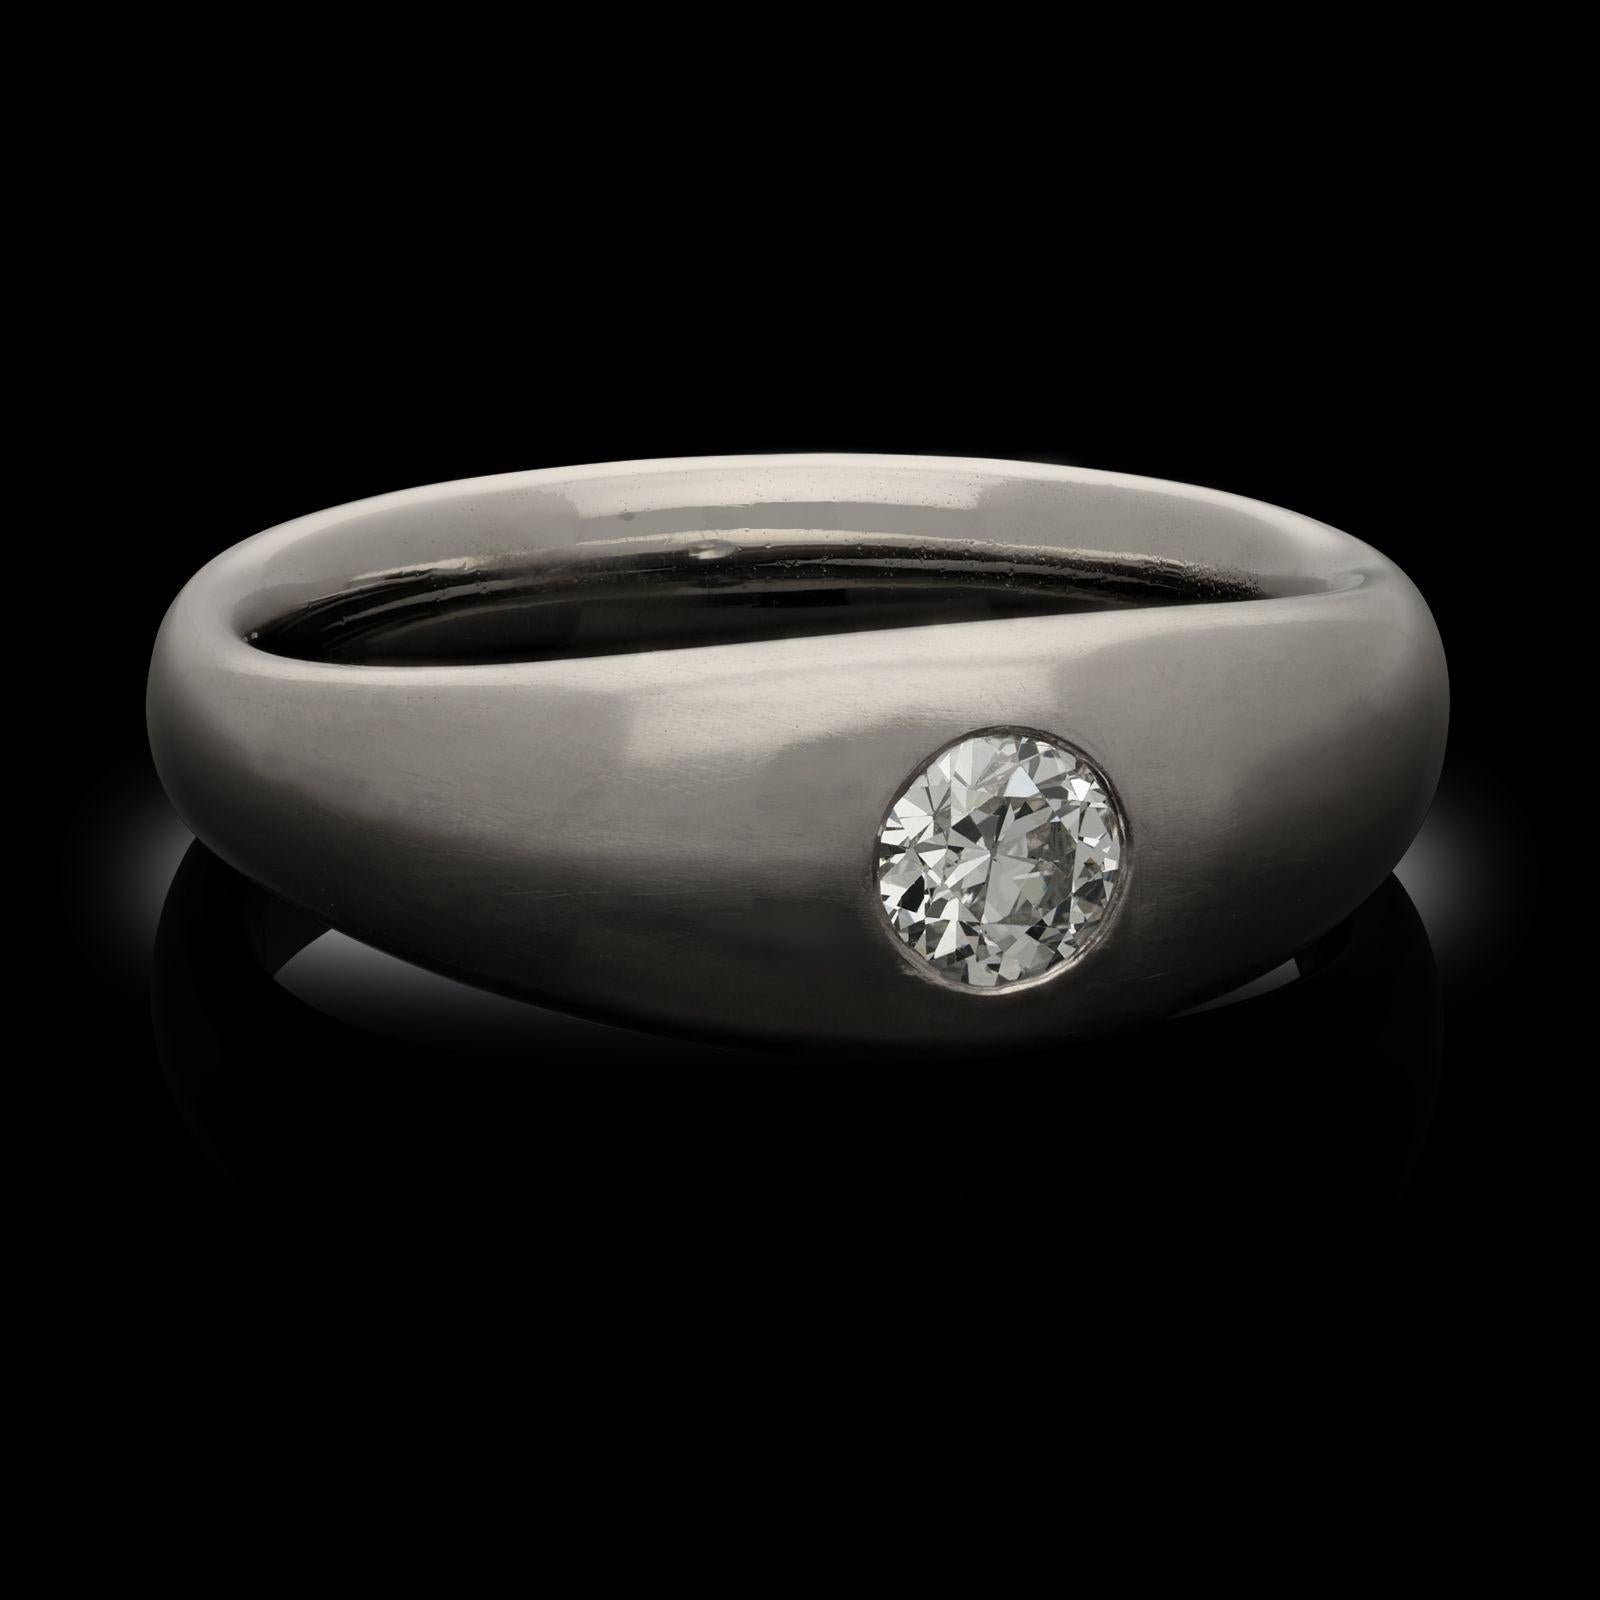 Ein Ring von Hancocks mit einem altgeschliffenen Diamanten und einem Platinband. Der Ring ist in der Mitte mit einem Diamanten im alten europäischen Schliff mit einem Gewicht von 0,45 Karat besetzt, der bündig in einer Fassung im Zigeunerstil in